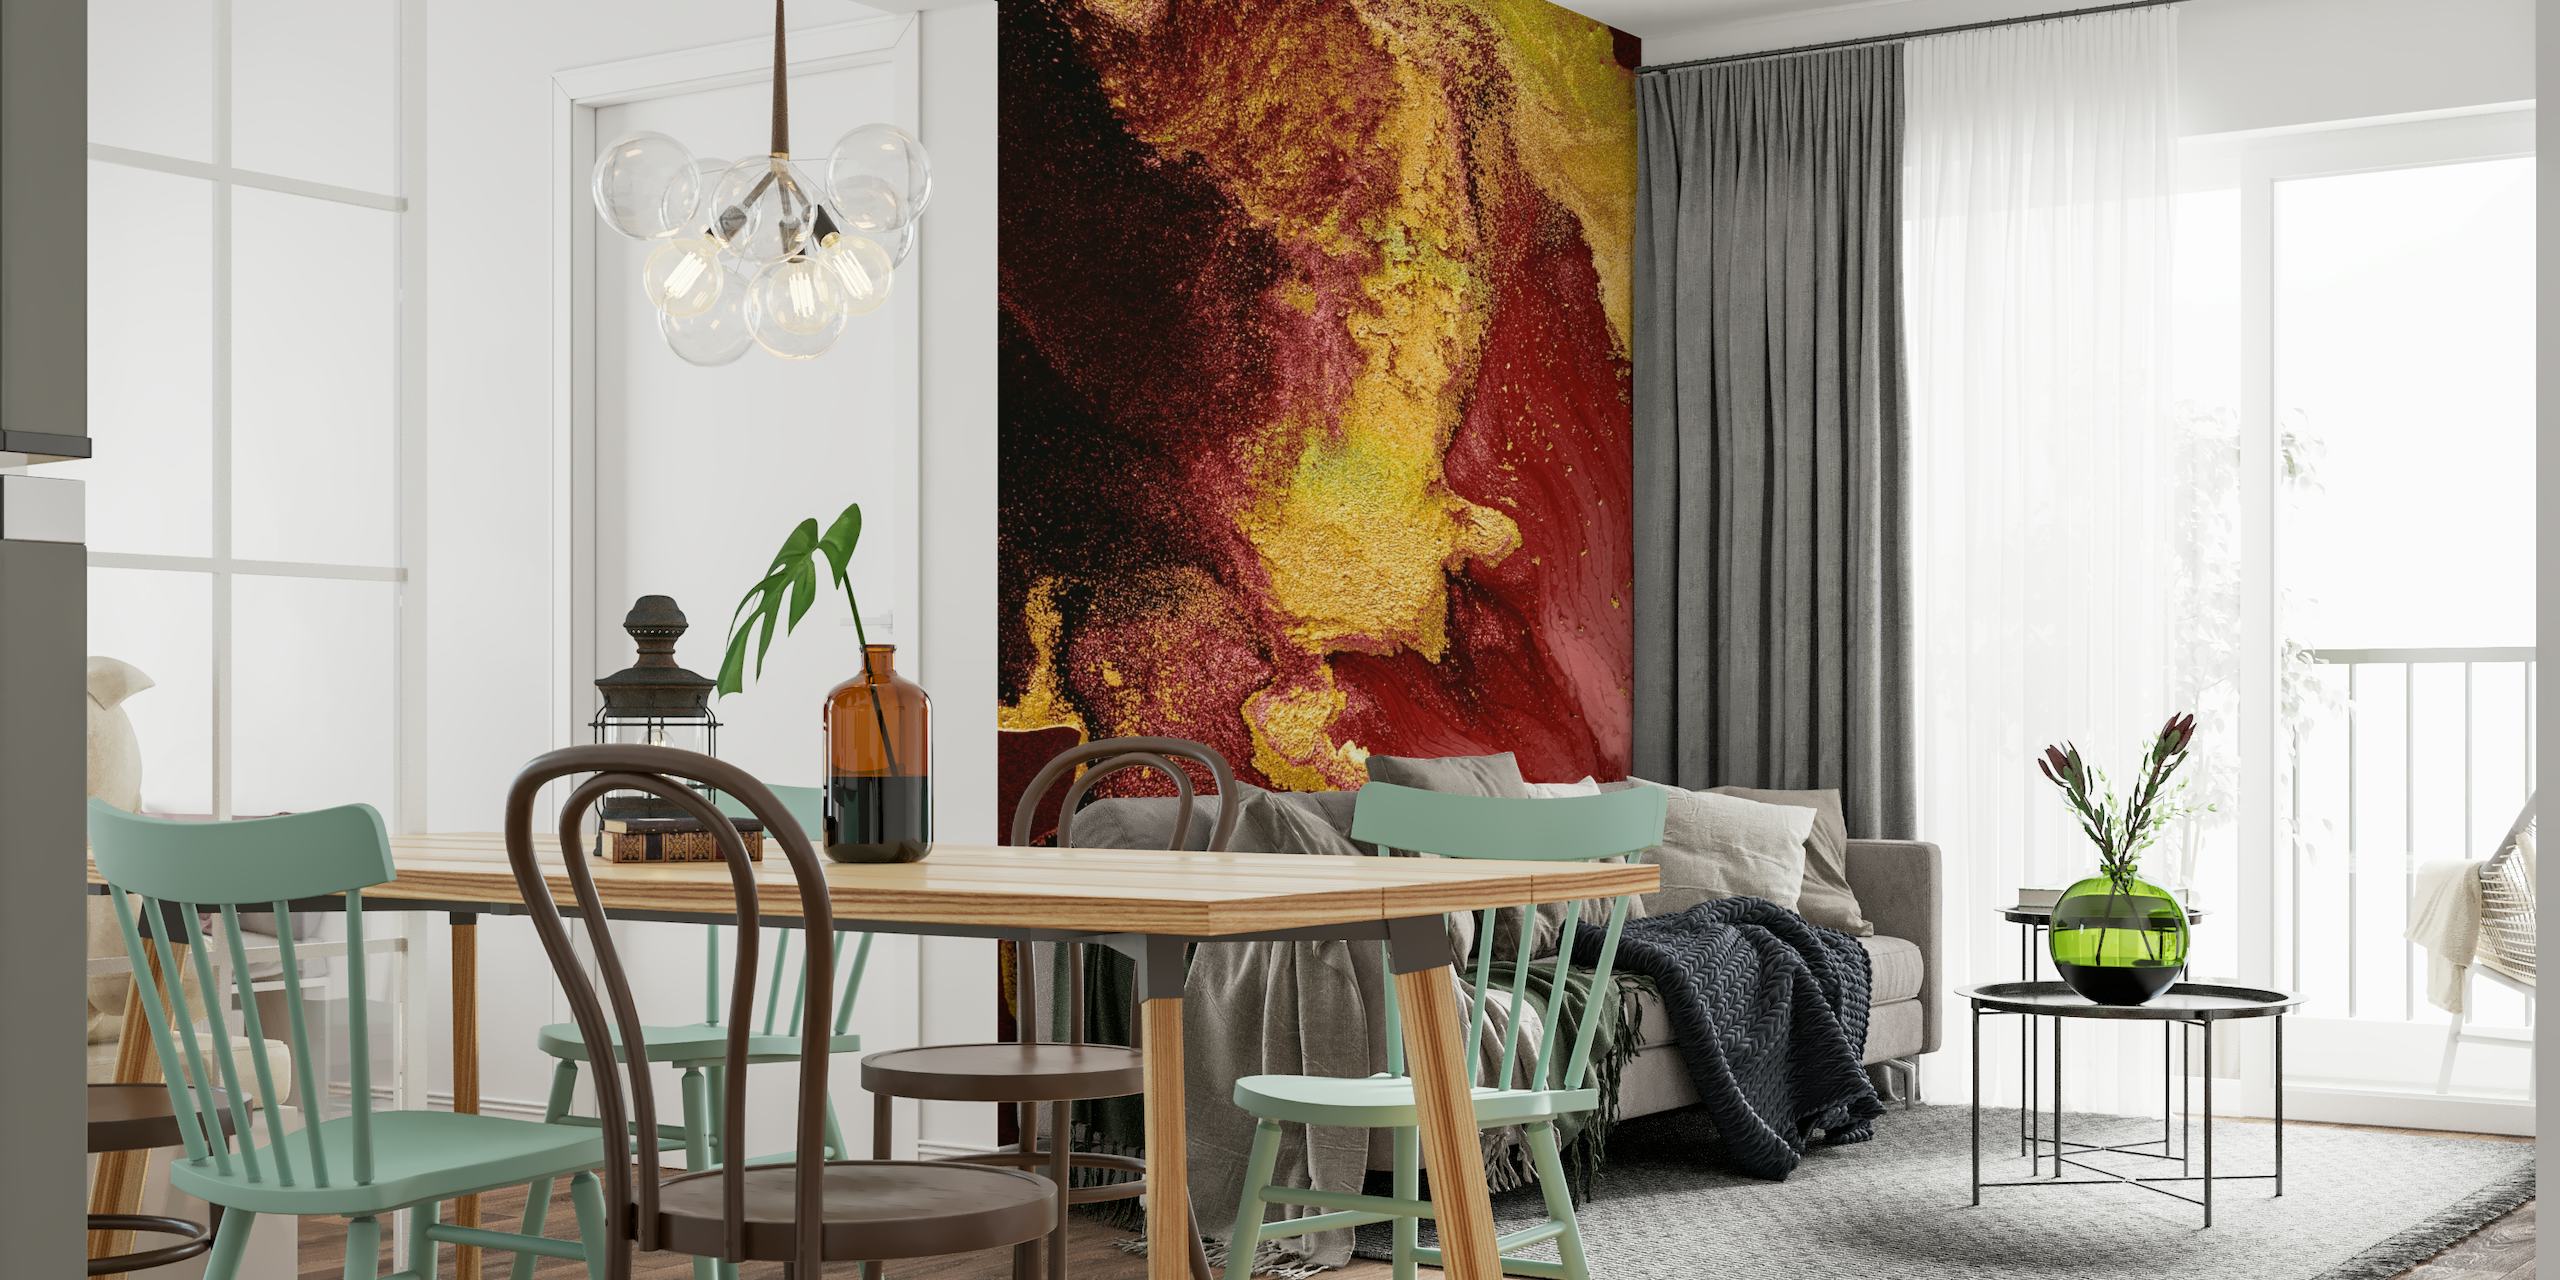 Goldene und rote abstrakte Fototapete mit wirbelnden Farbtönen und strukturiertem Erscheinungsbild für einen luxuriösen Look